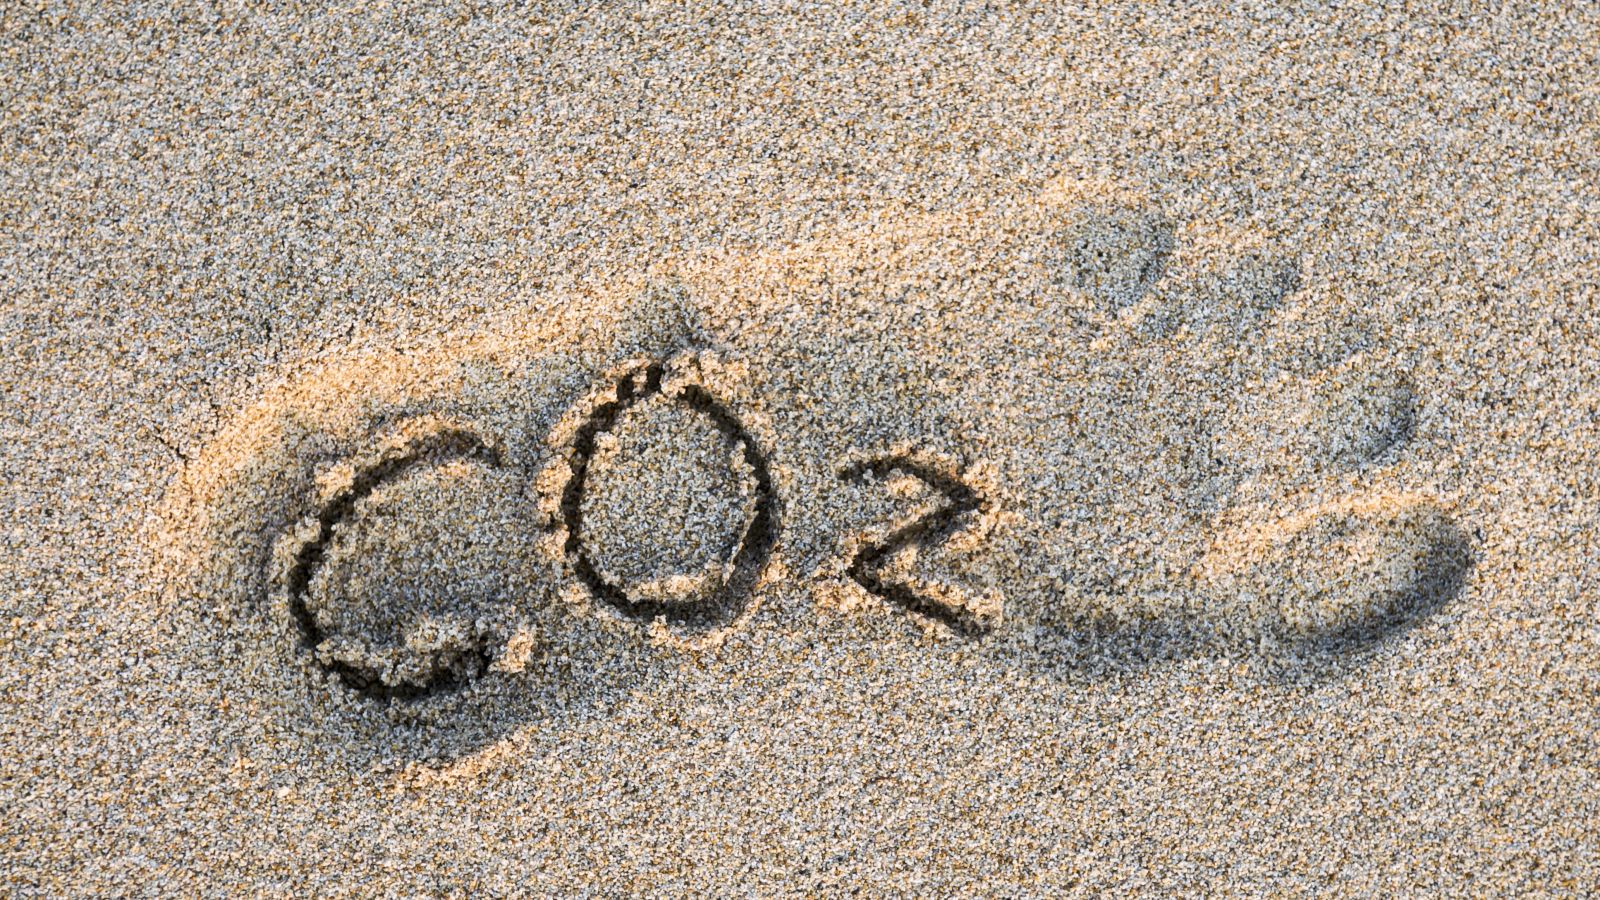 CO2-Text im Umriss eines Fußes in goldenem Sand.